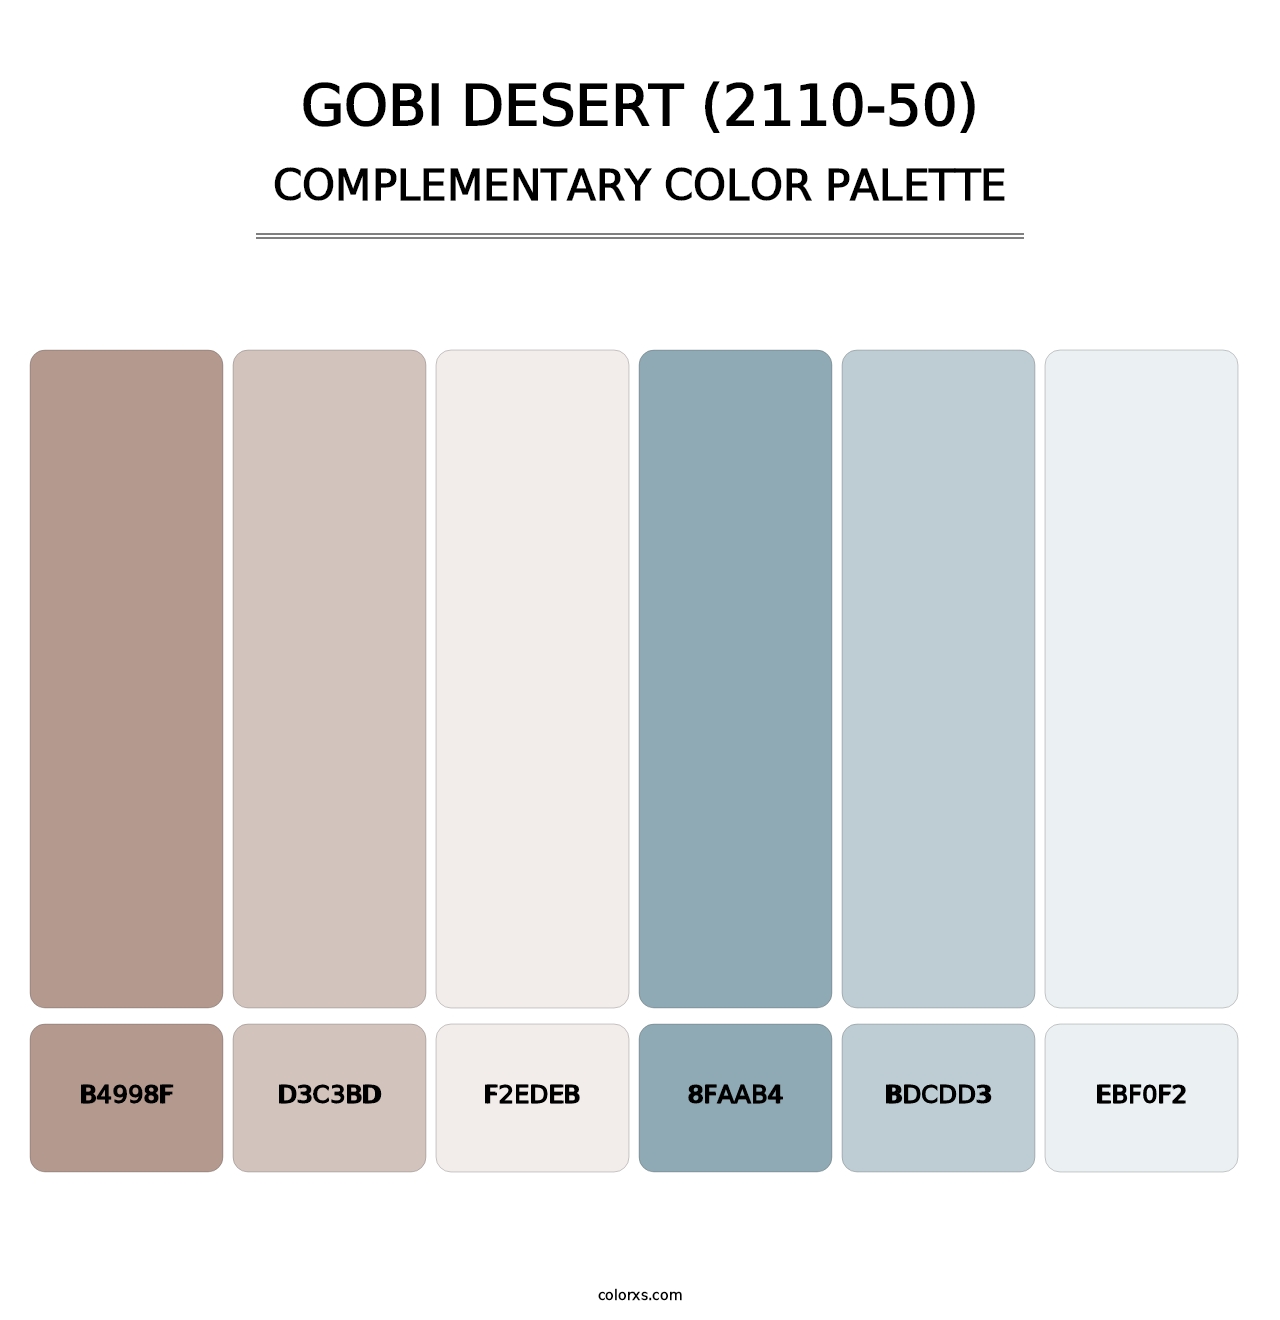 Gobi Desert (2110-50) - Complementary Color Palette